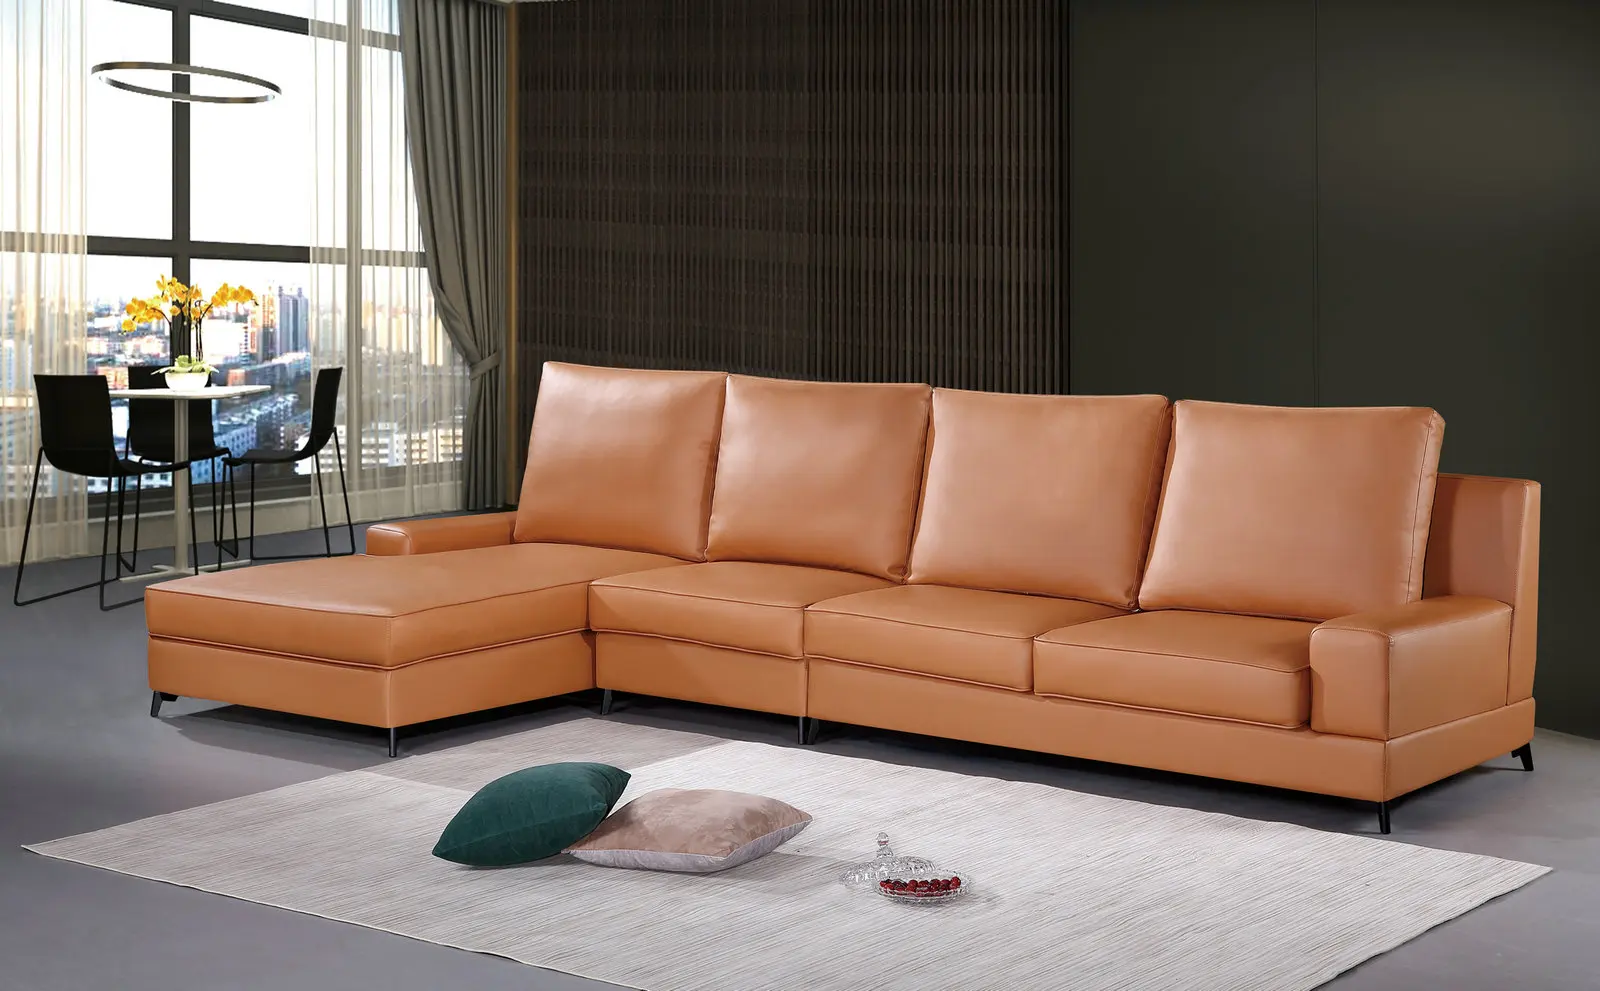 Germany Simple Diva Design Furniture Khaki Couch Lawson Sofa - Latest Living Sofa Design,Italy Leather Sofa,Nova Leather Sofa Product Alibaba.com